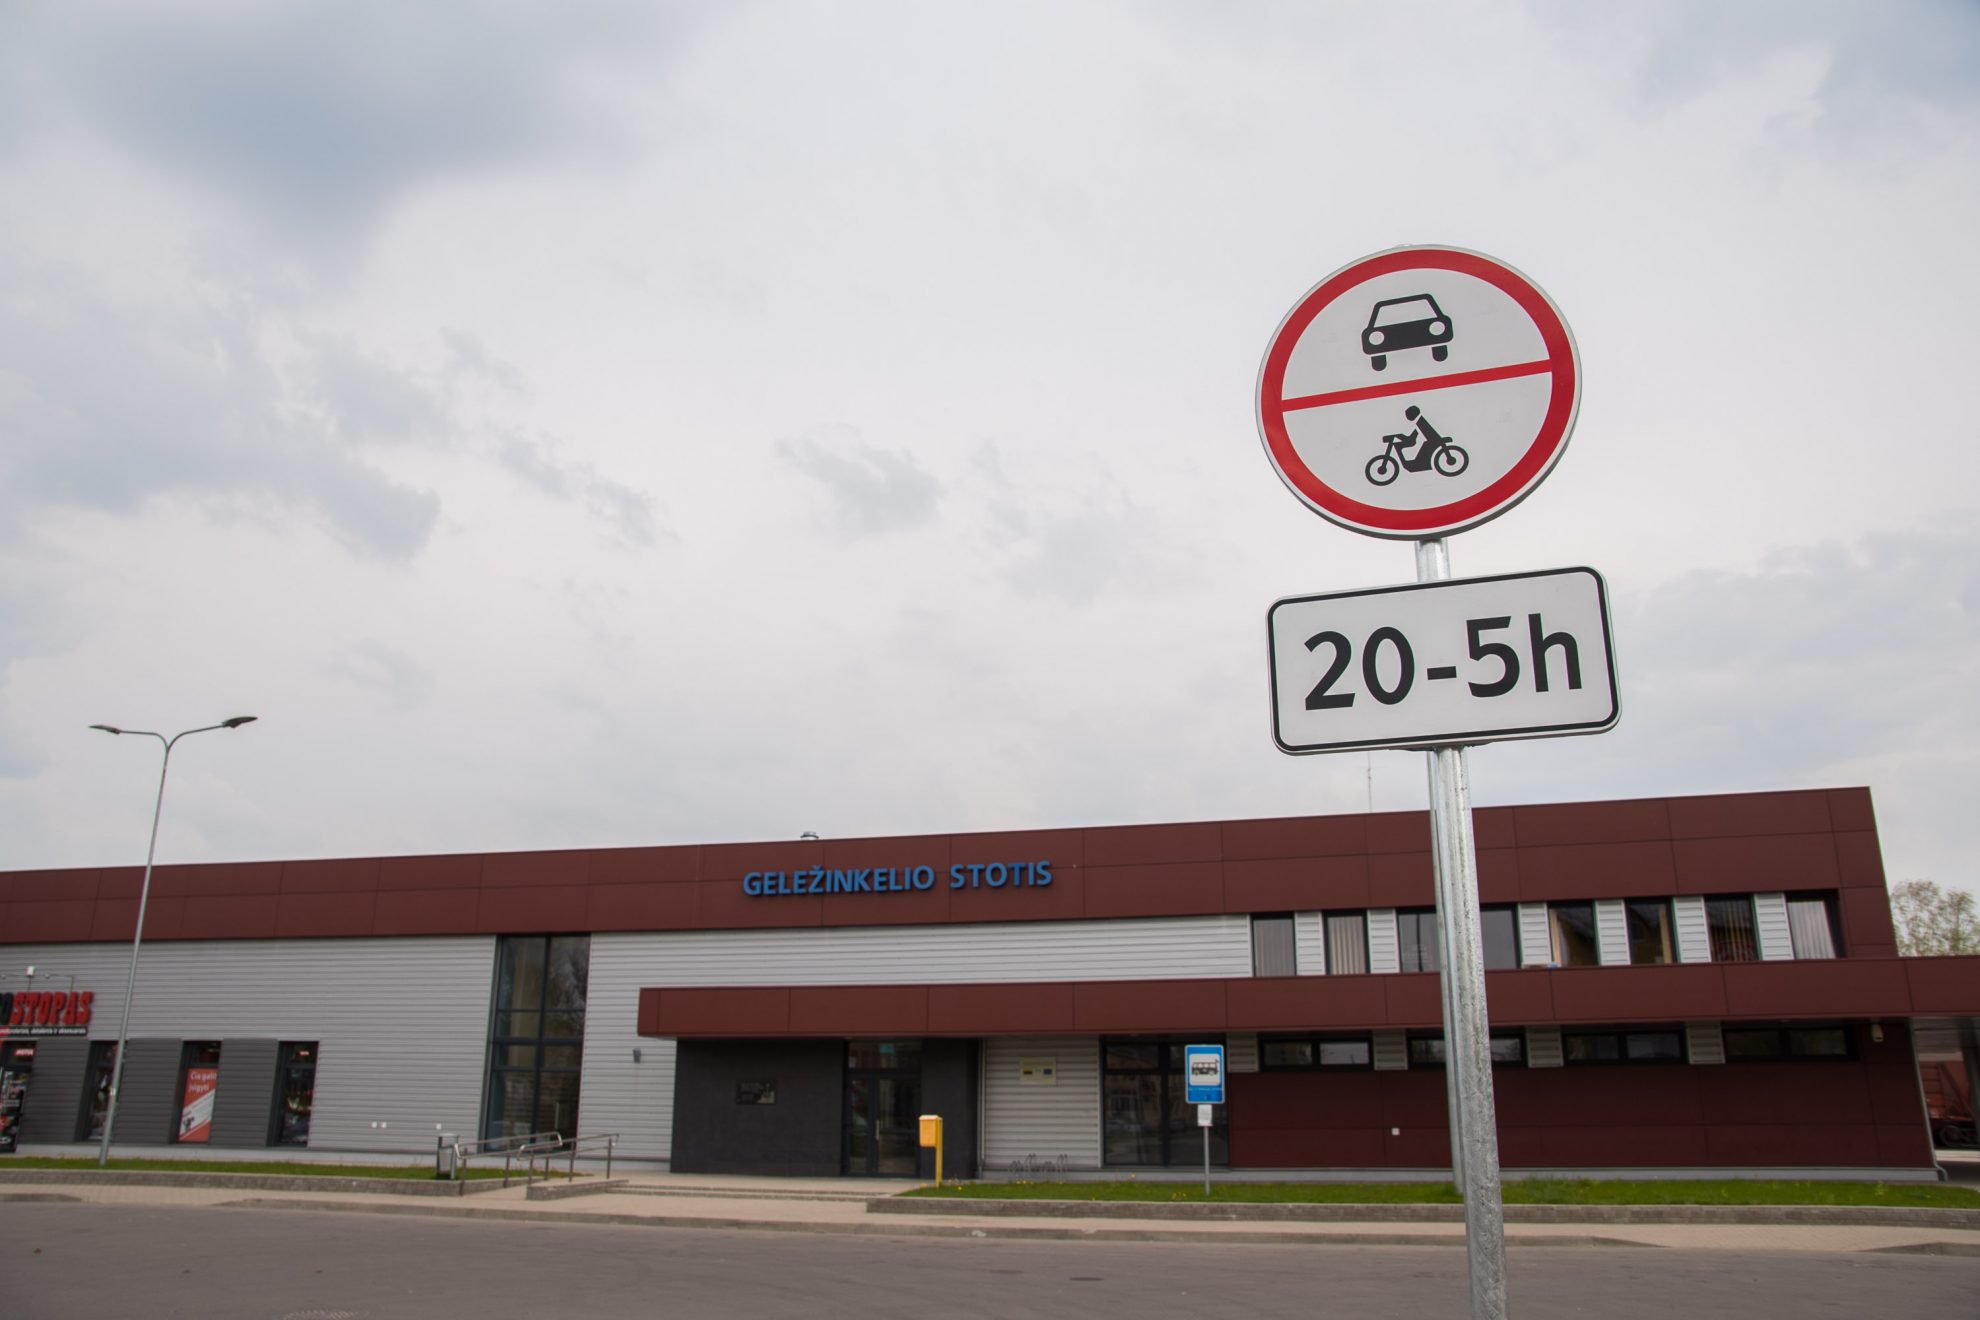 Eismas transporto priemonėms nuo 20 iki 5 val. apribotas S. Kerbedžio gatvėje, šalia traukinių stoties esančioje automobilių aikštelėje.